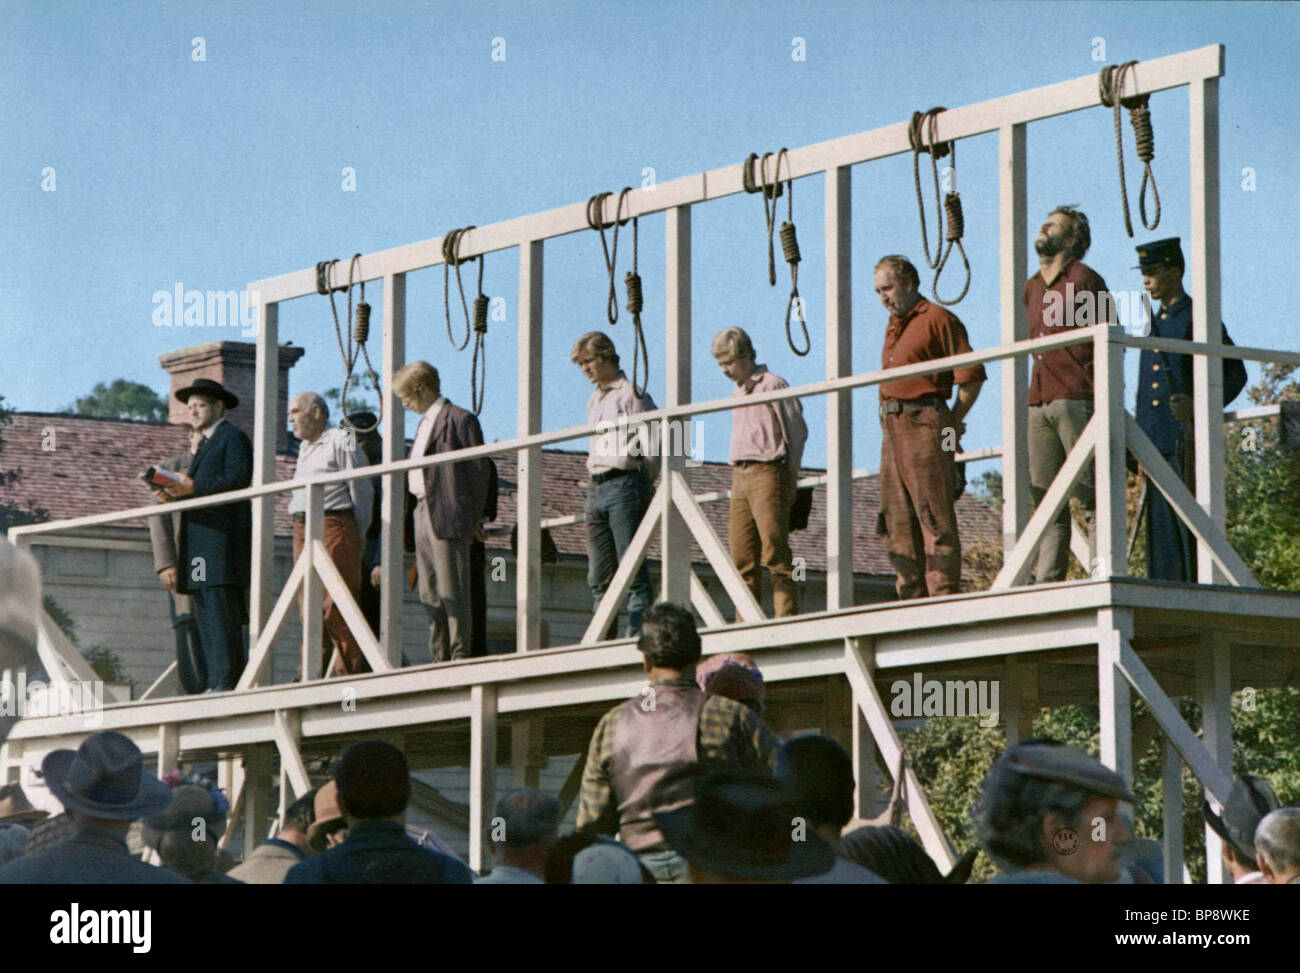 hanging-gallows-hang-em-high-1968-BP8WKE.jpg